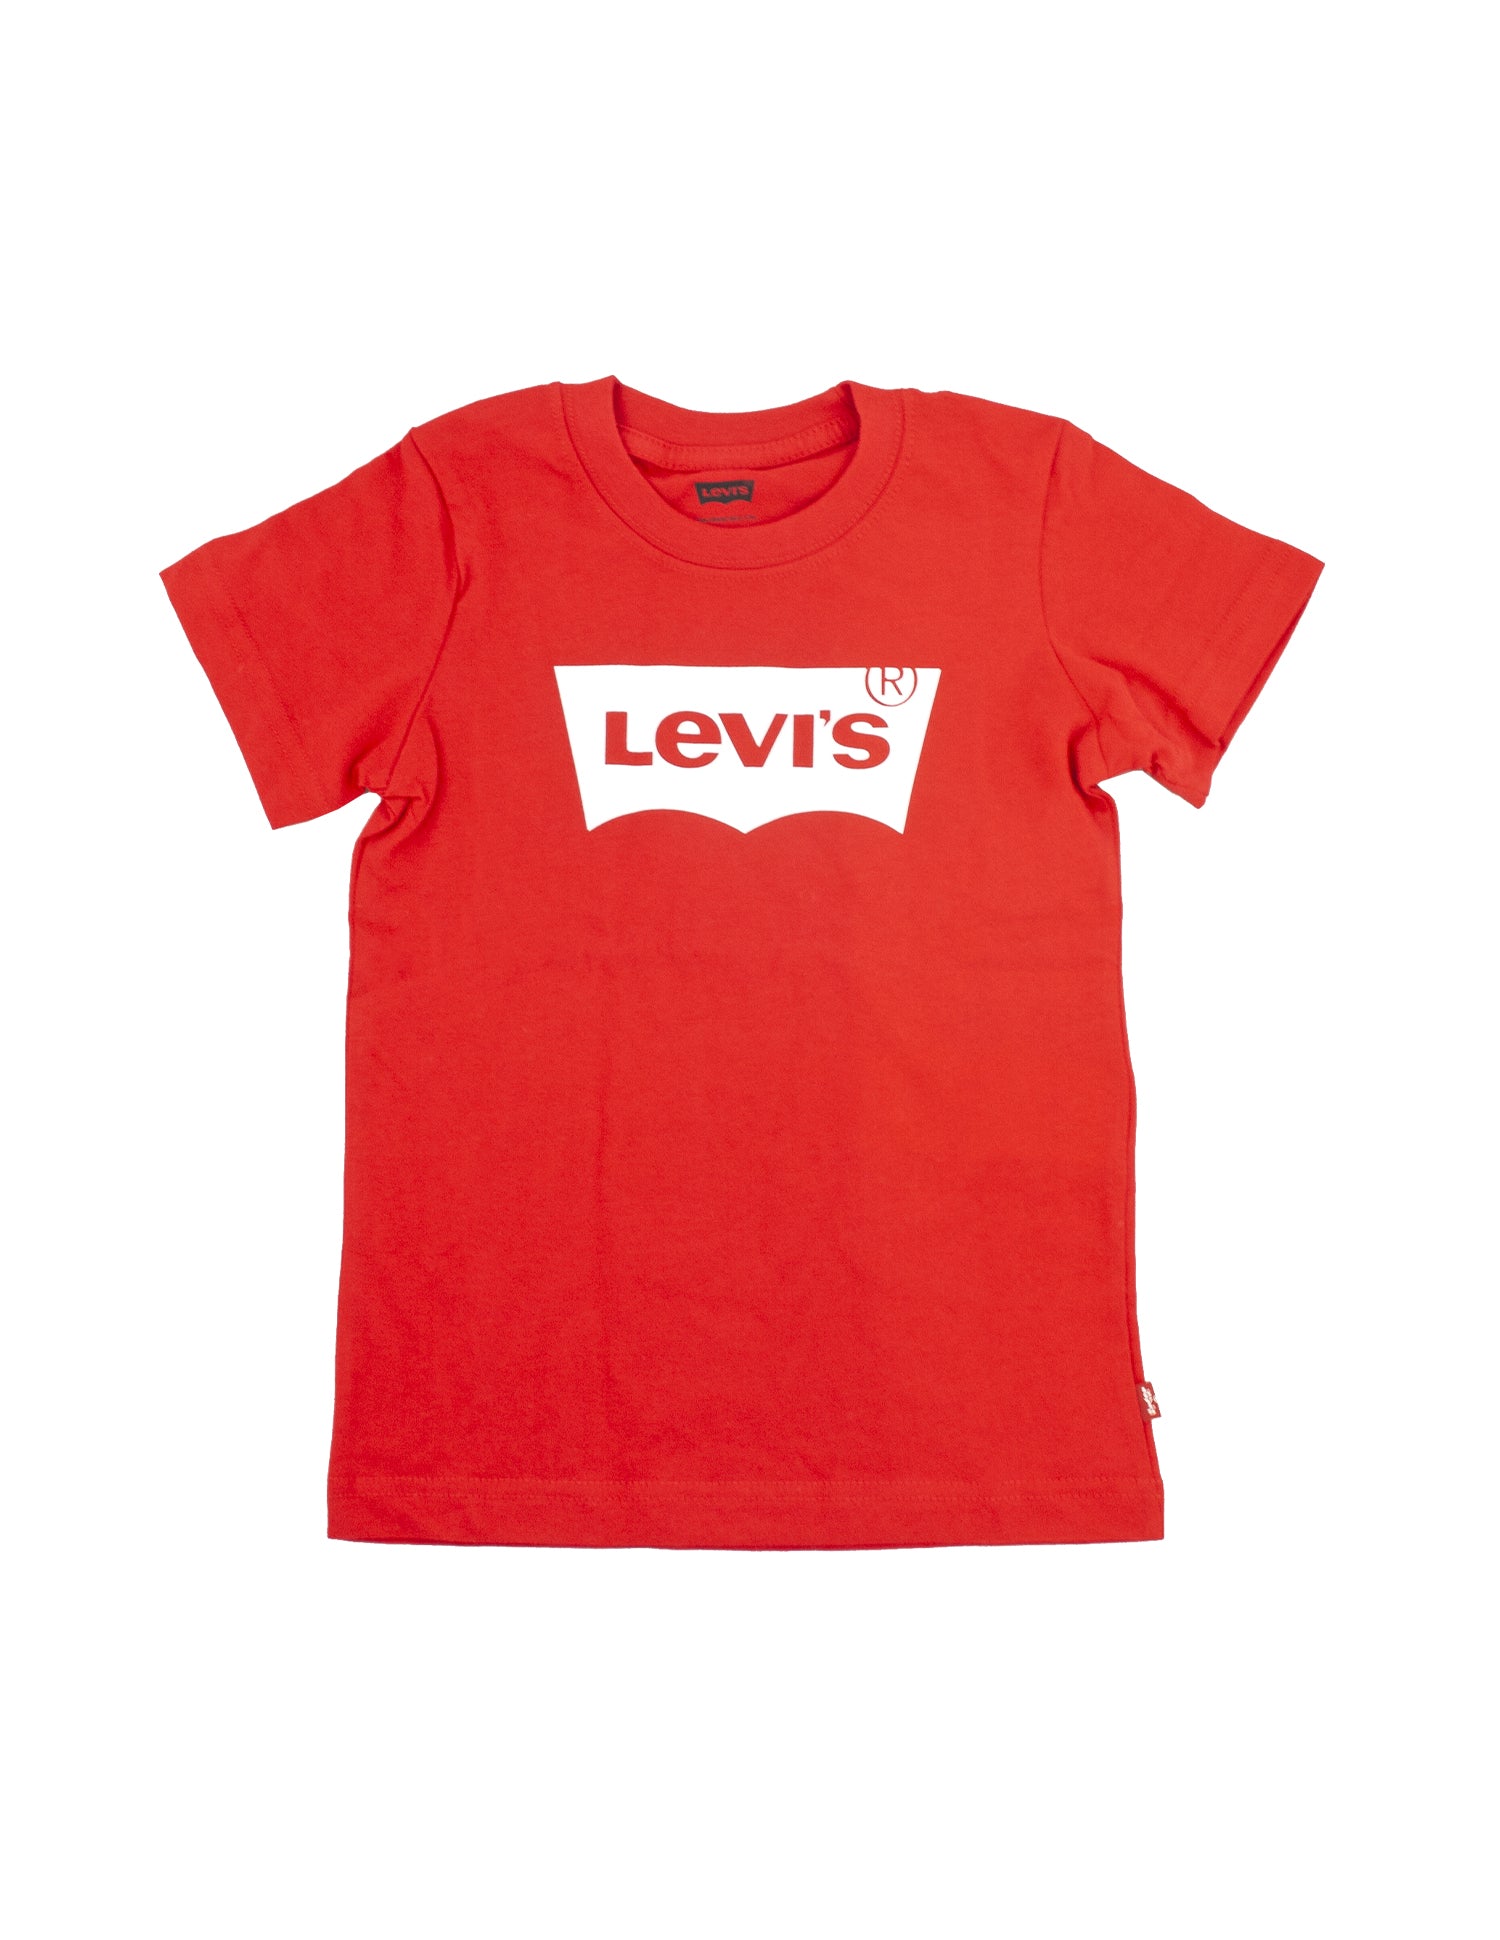 LEVIS
Levi's Batwing T-Shirt rossa